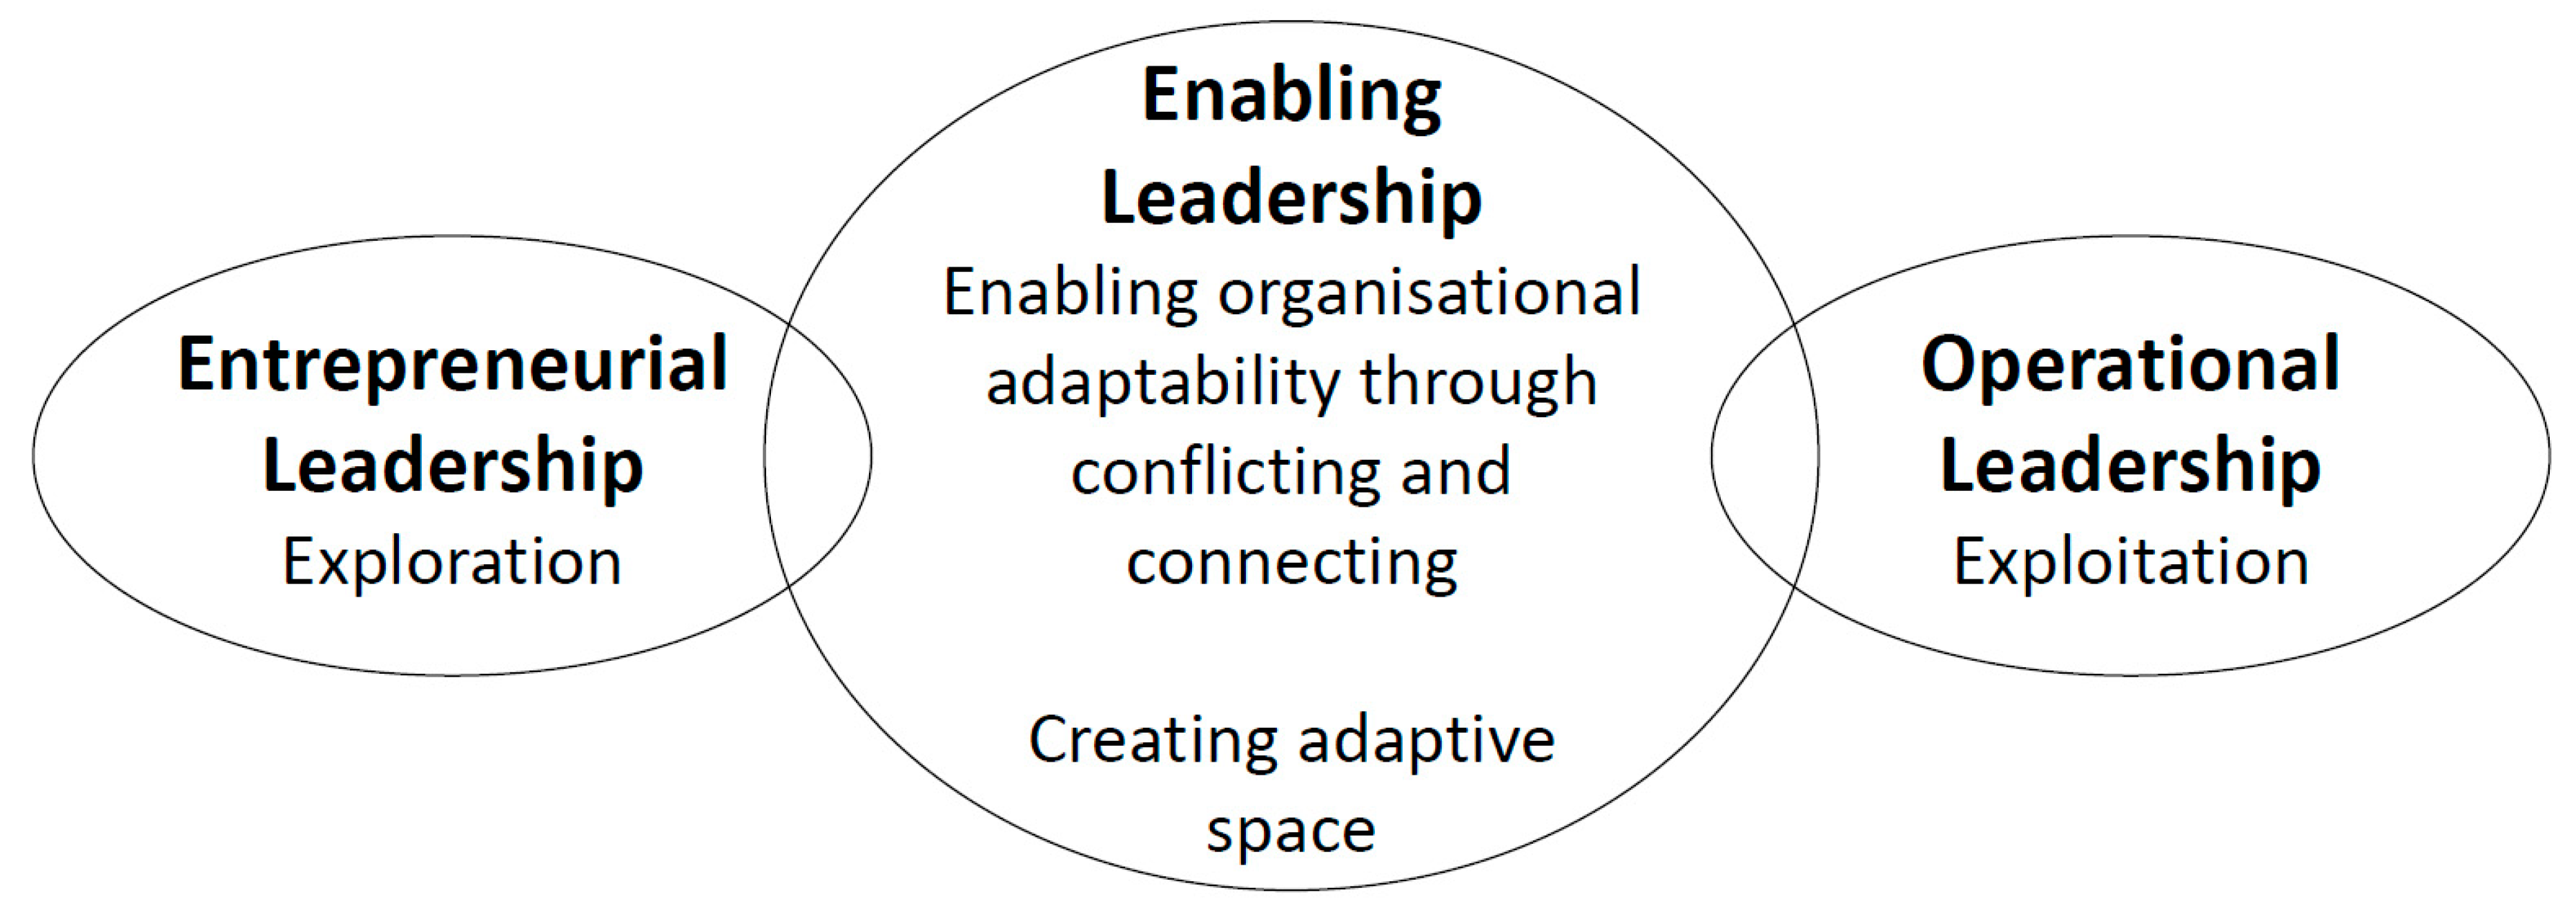 leadership development studies a humanities approach